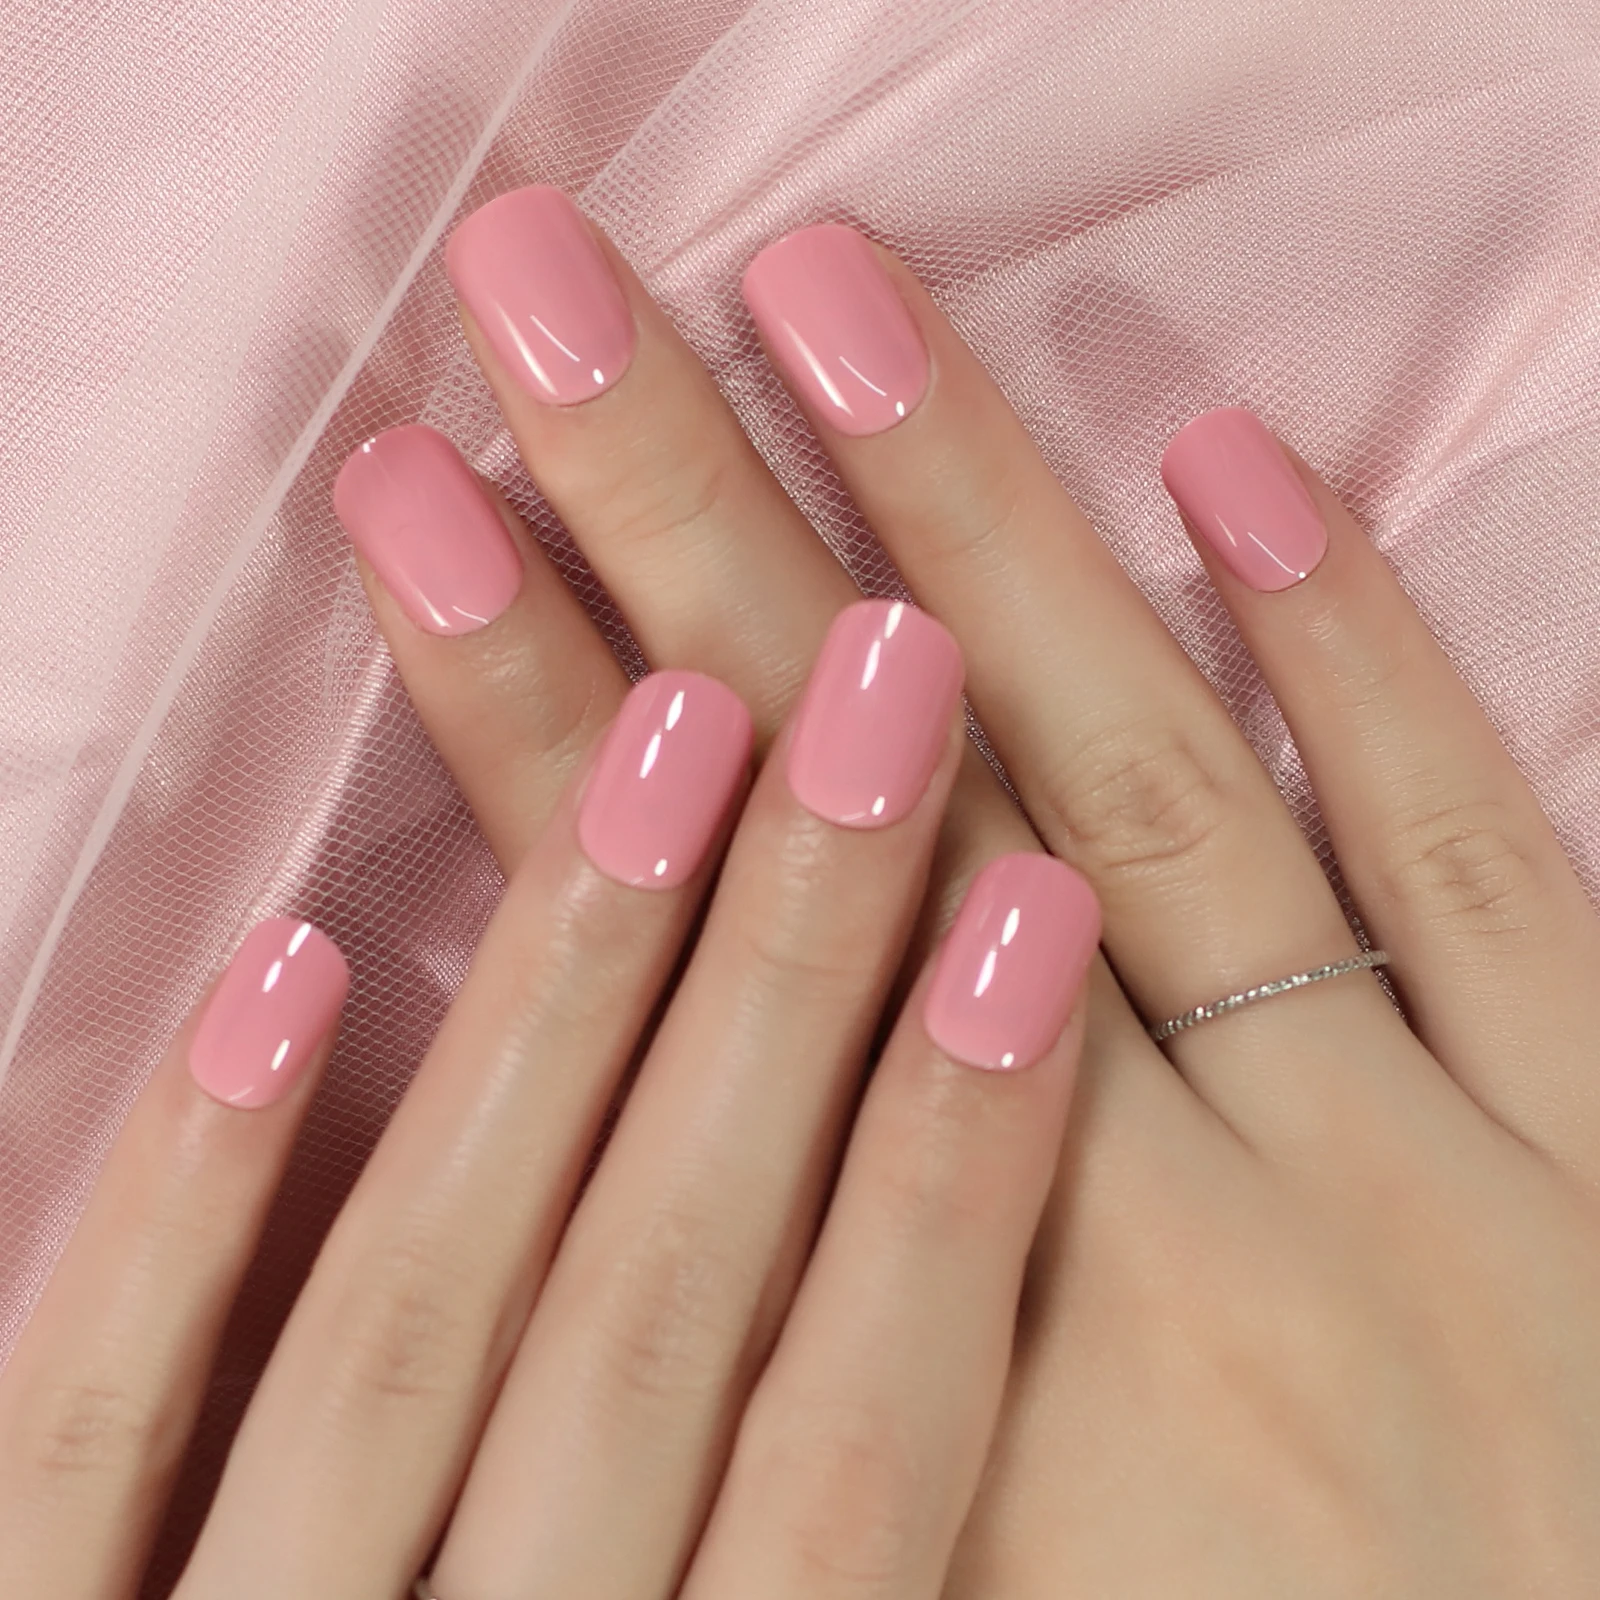  Чистый розовый цвет Светлое зеркало Gossy Ногти Squoval Накладные ногти - это маникюр оптом Полное покрытие Кончики для рук Короткая версия  4